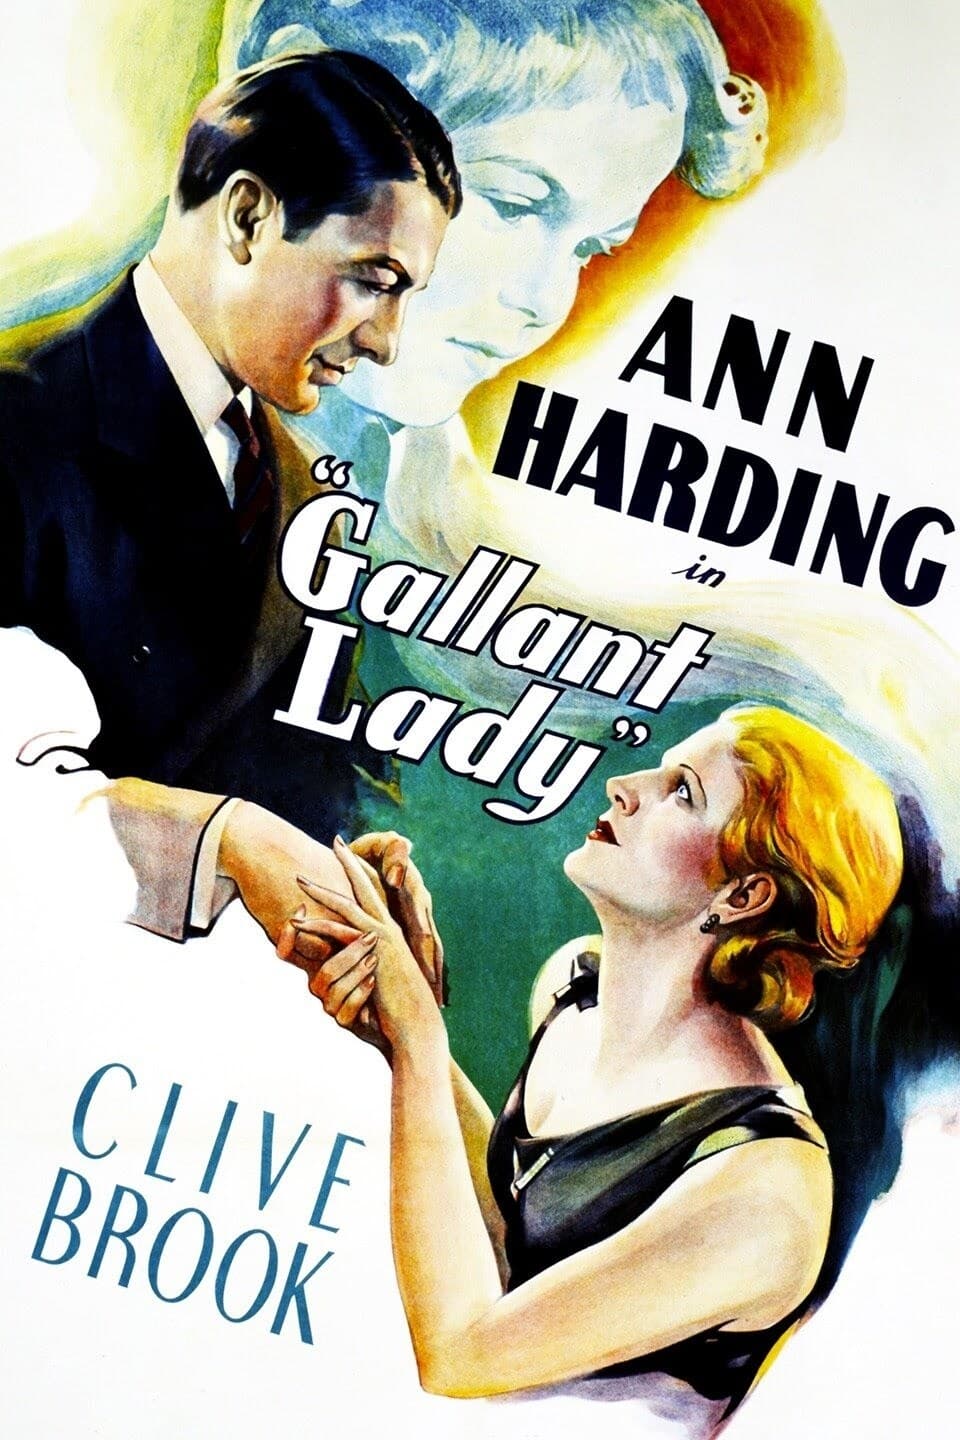 Gallant Lady (1933)